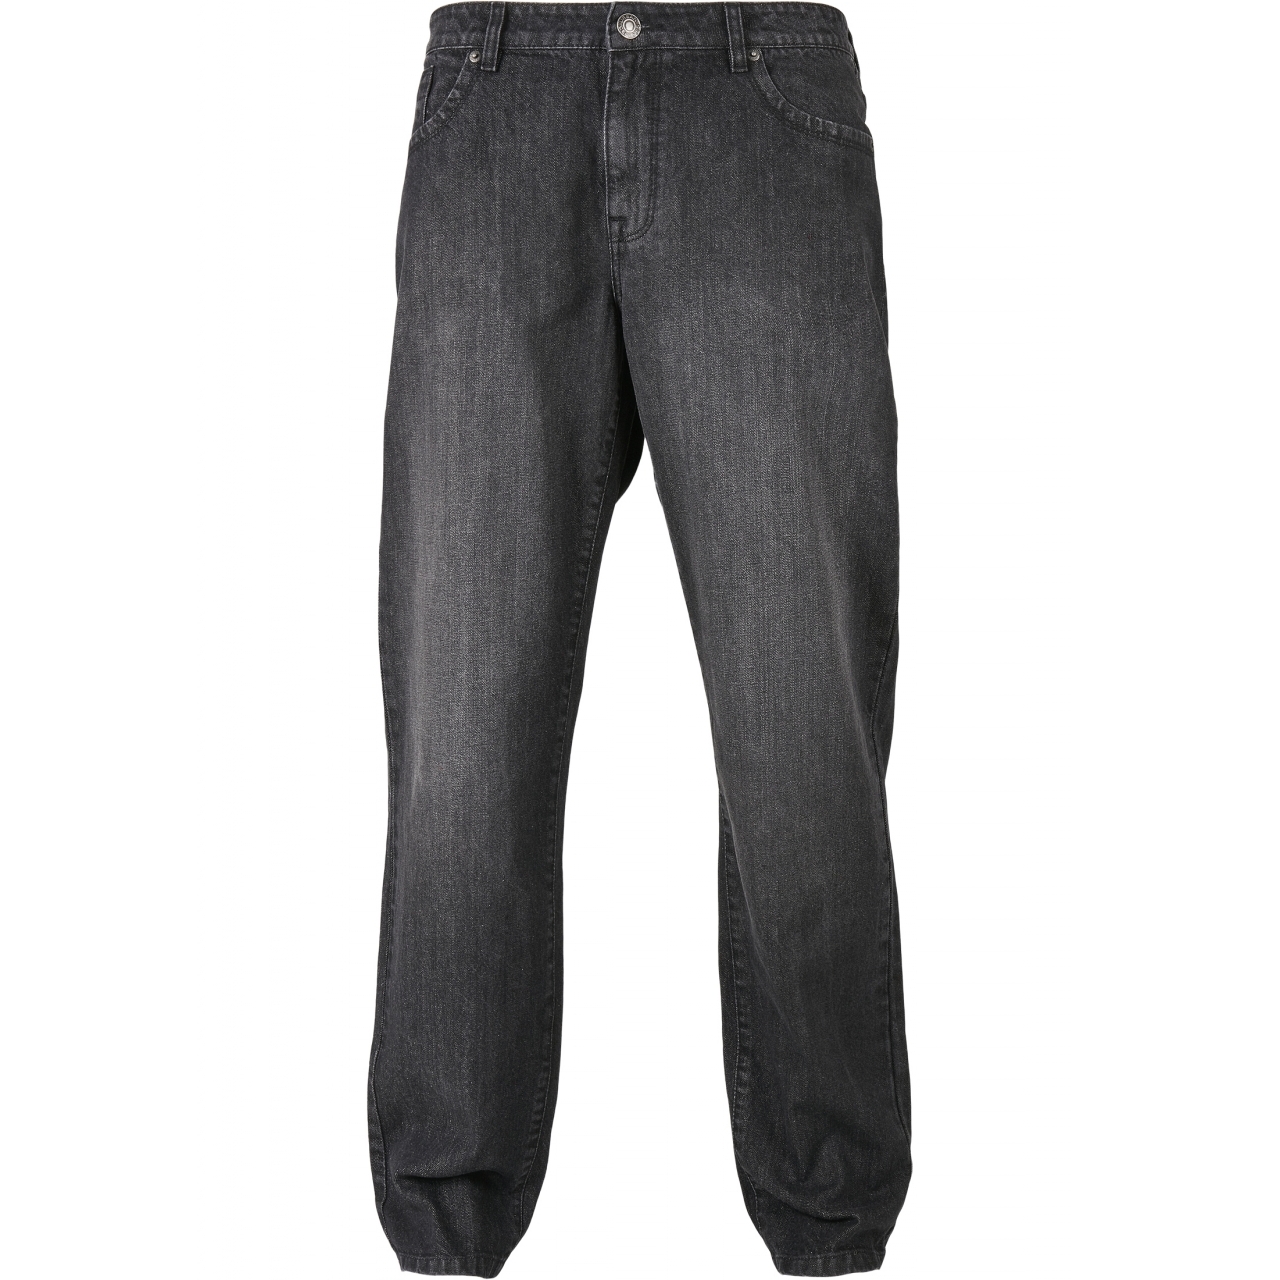 Džíny Urban Classics Loose Fit Jeans - černé, 30/32